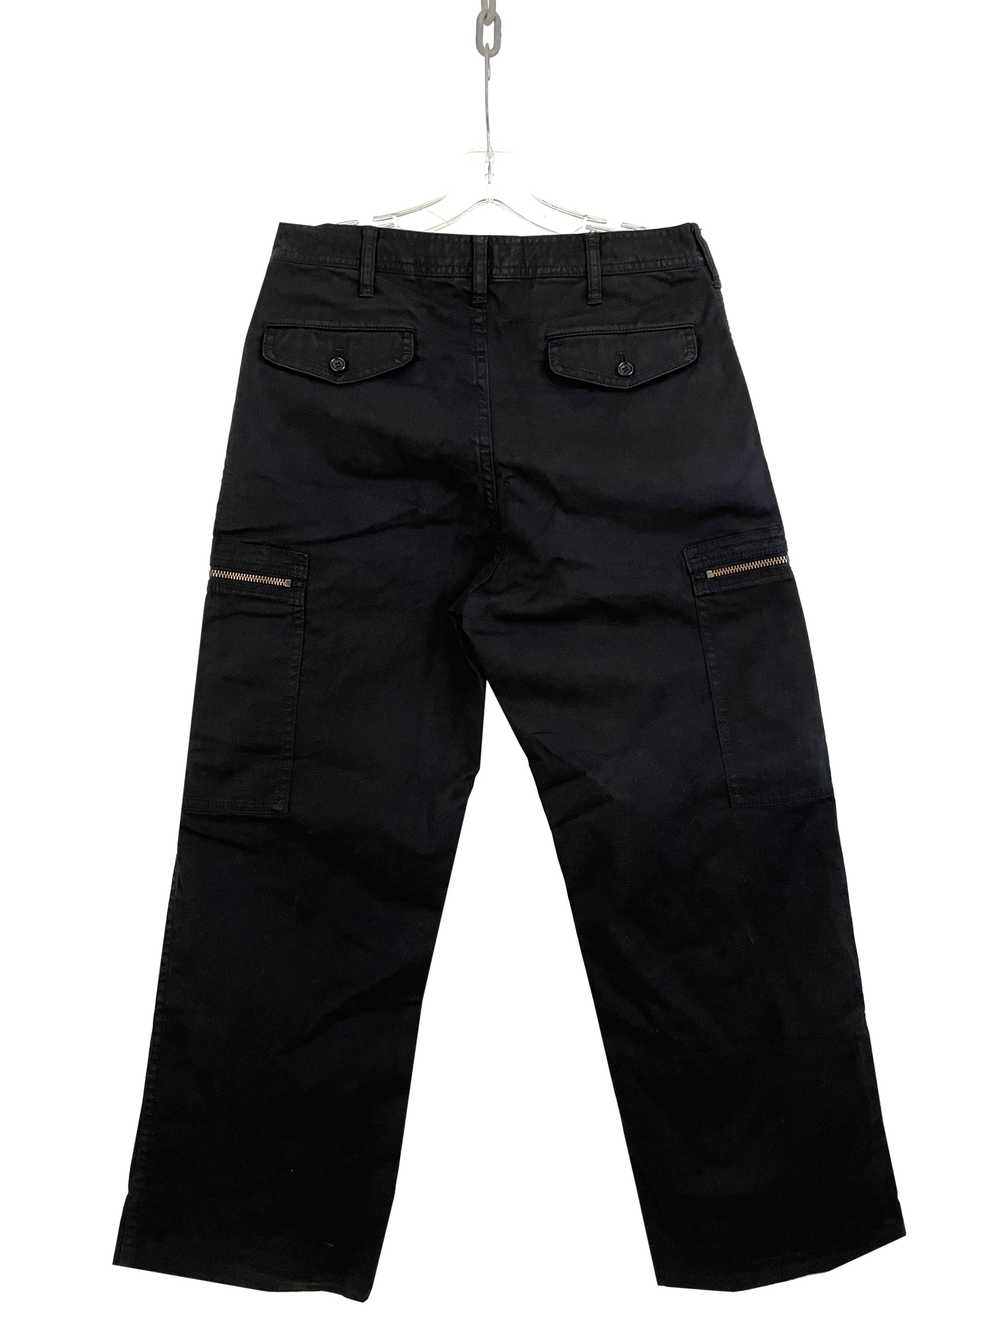 Comme des Garçons Homme 2007 Zipper Cargo Pants - image 3